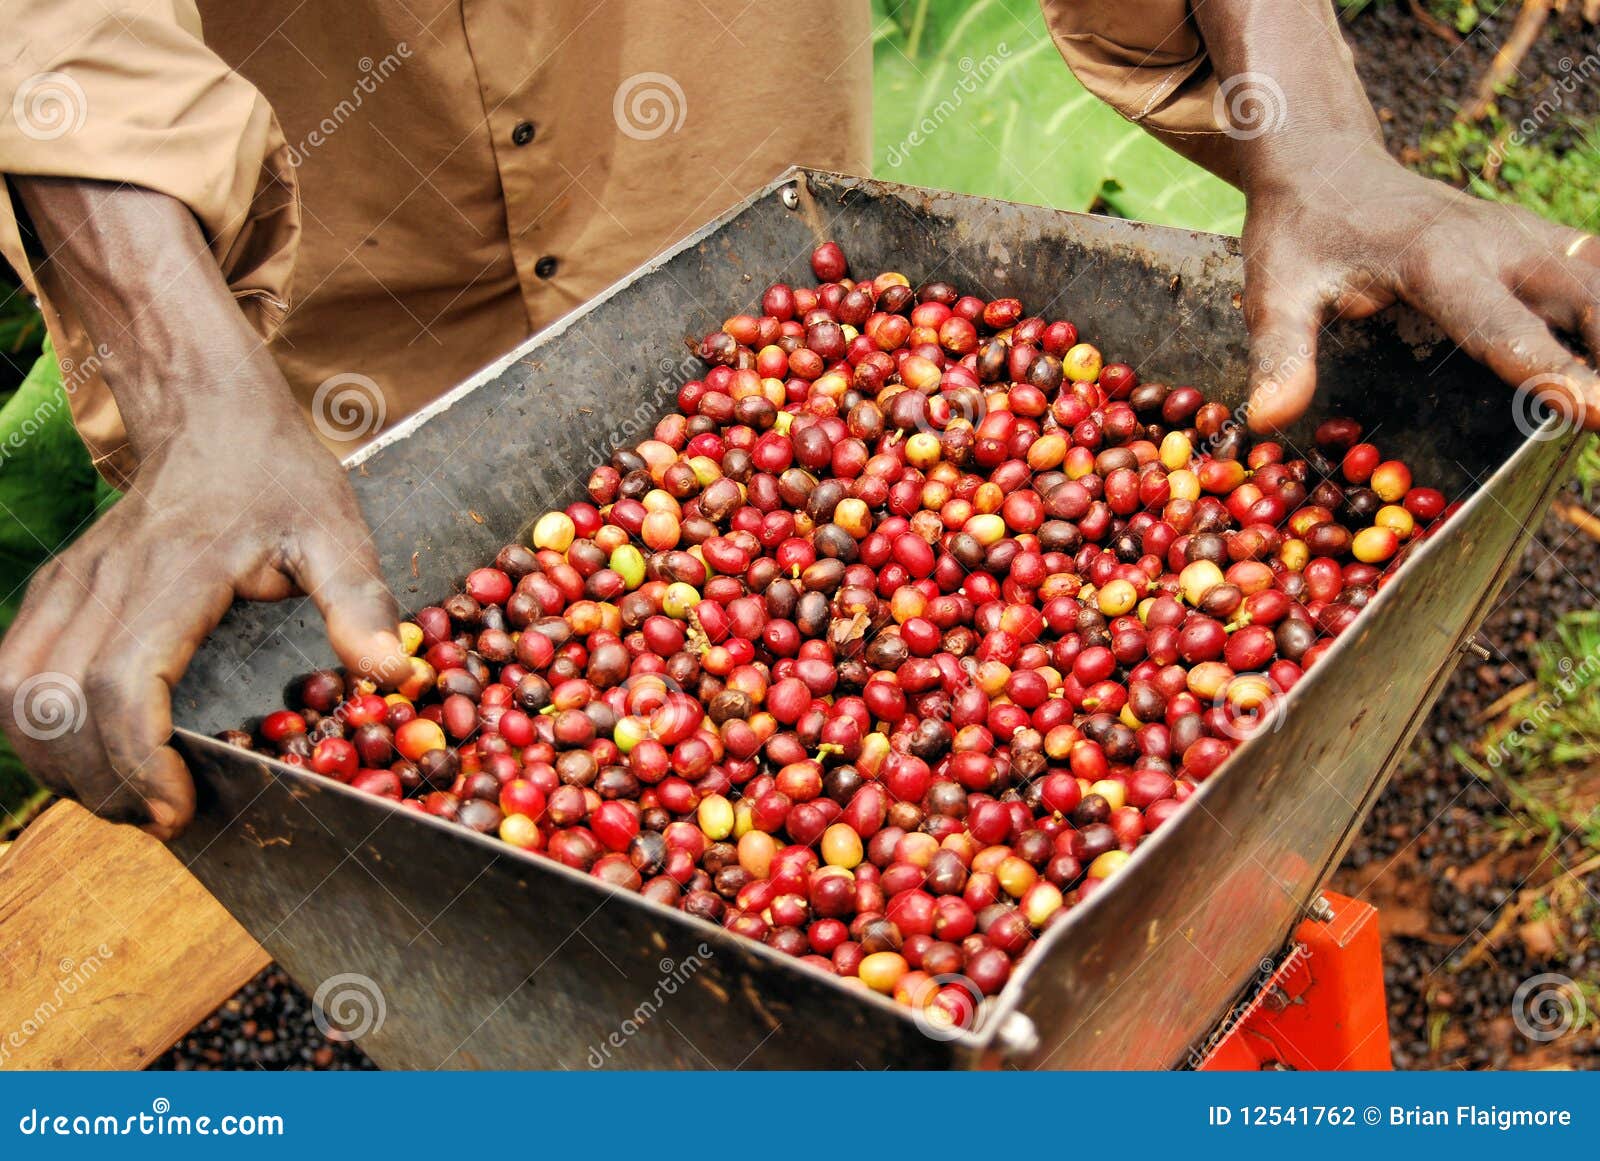 coffee in uganda